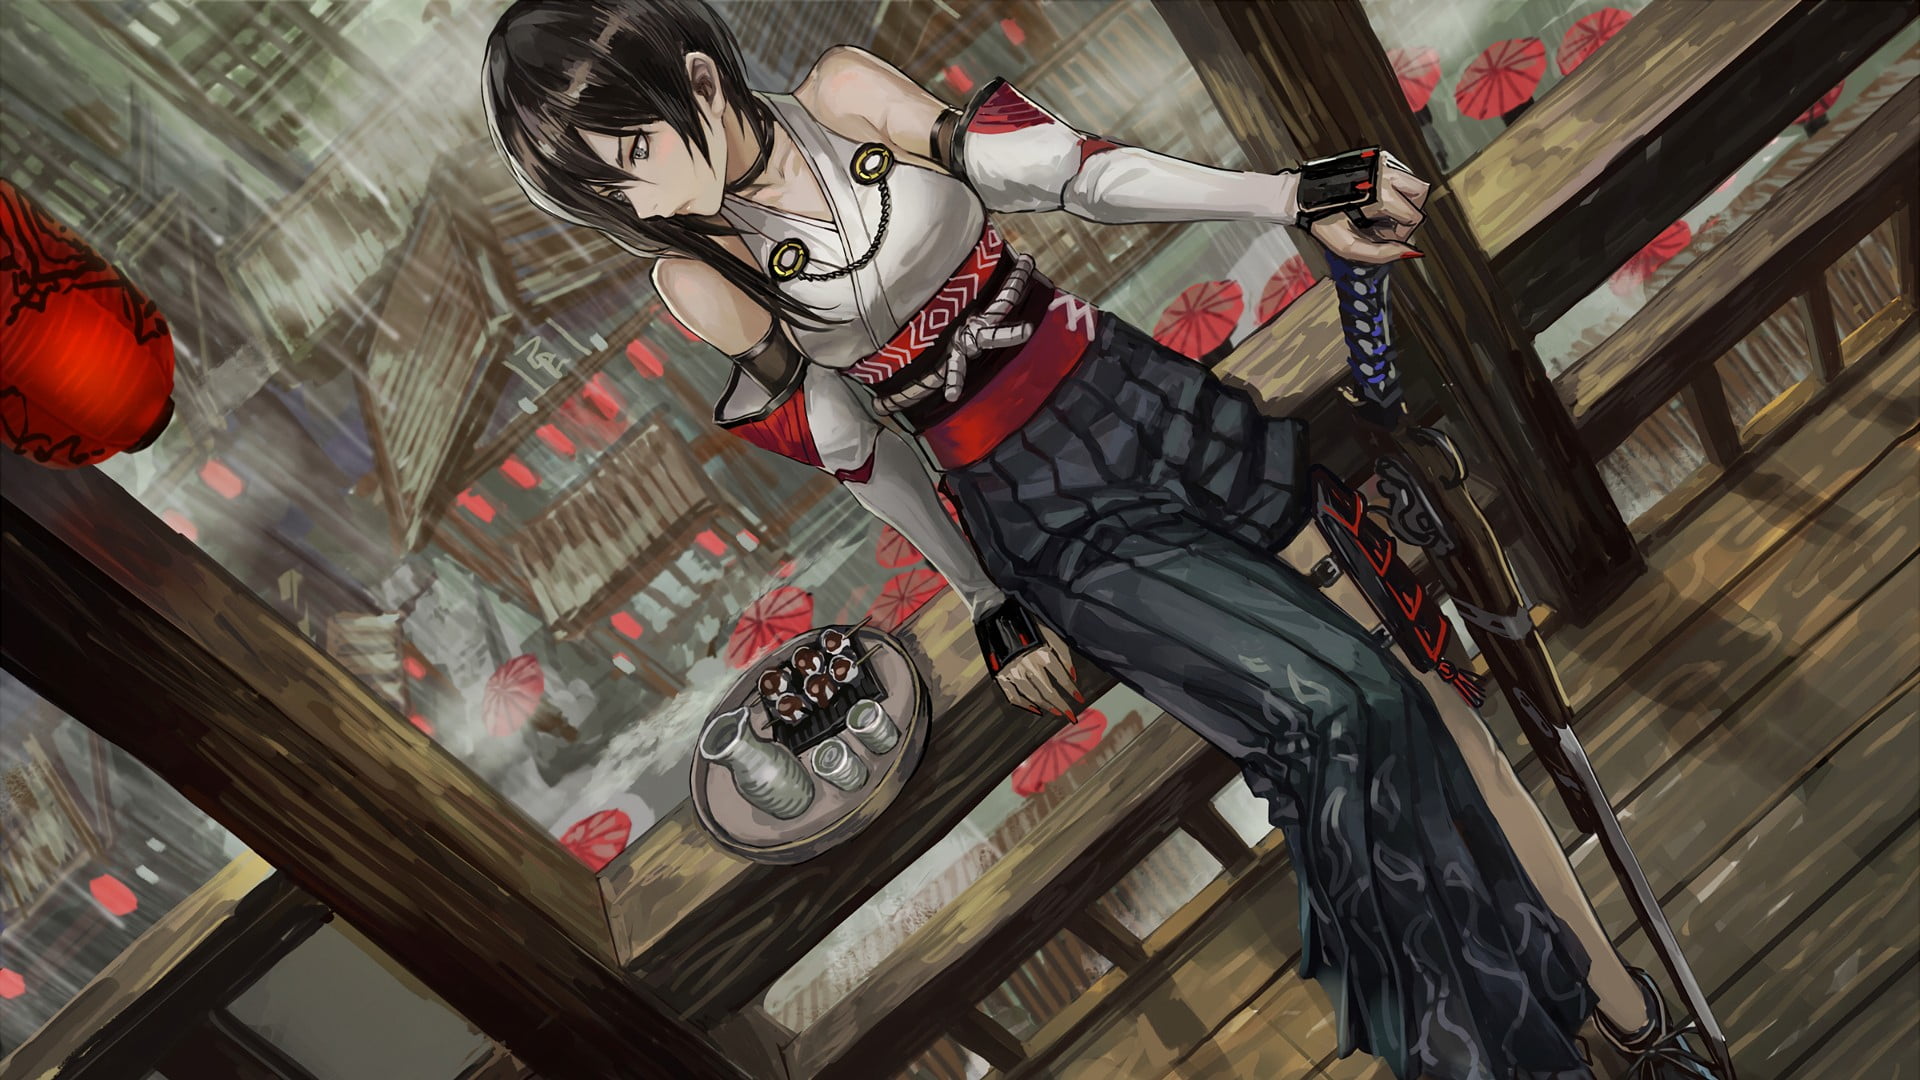 female anime character holding rifle illustration, Pixiv Fantasia